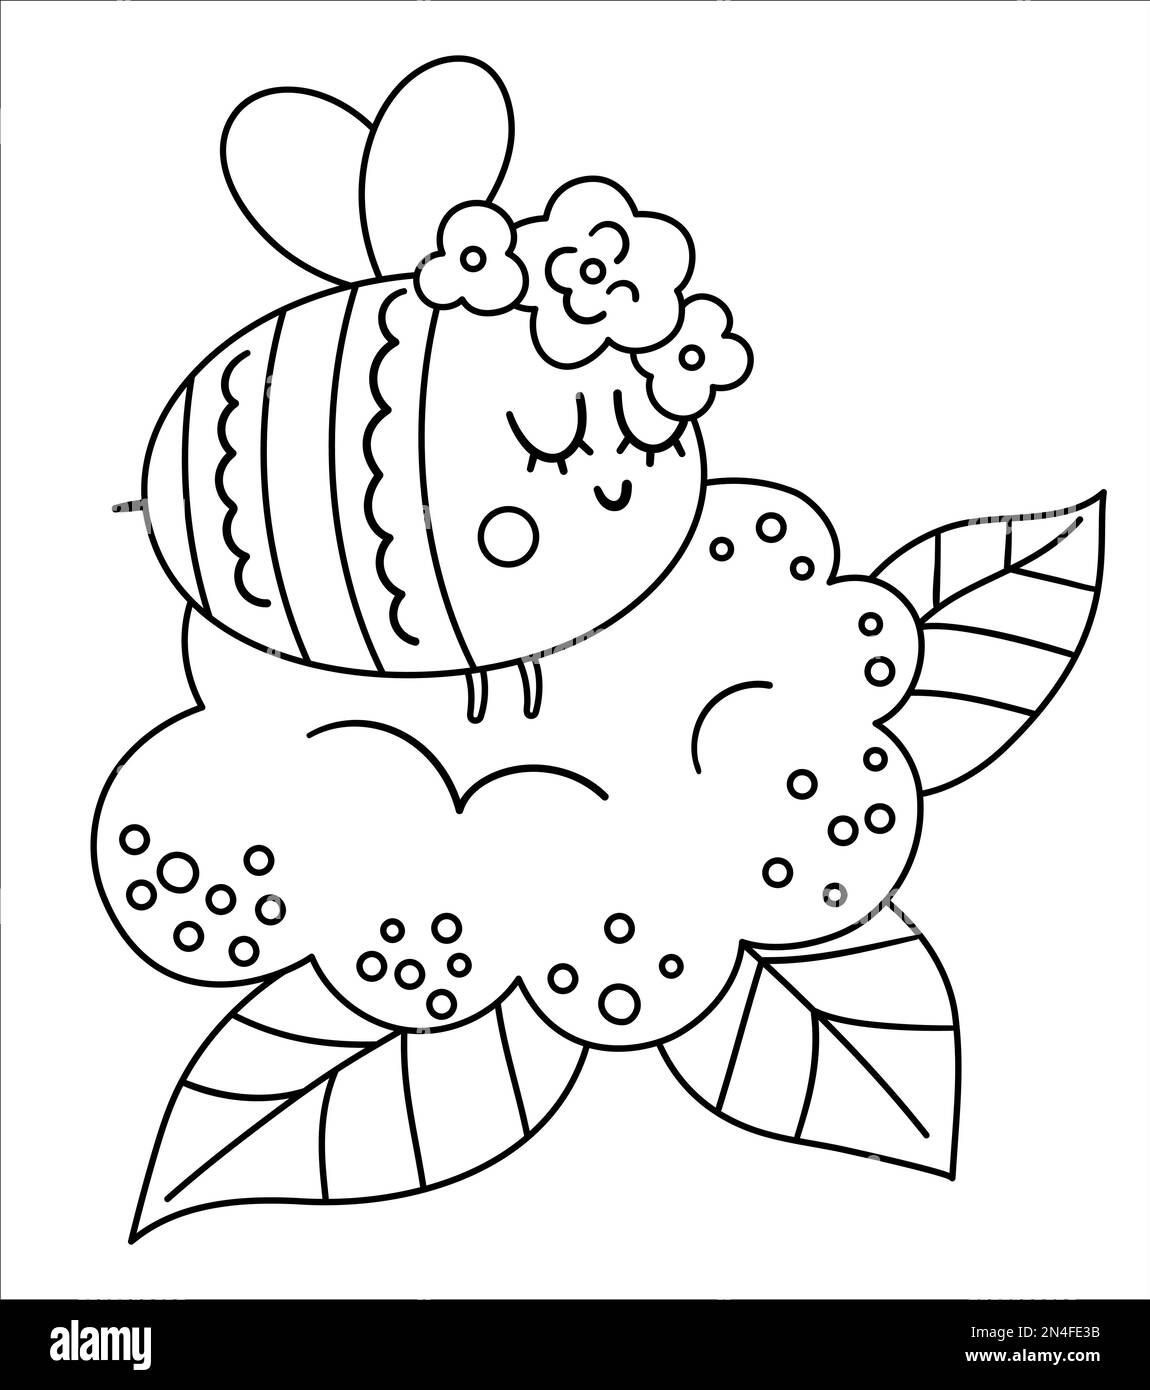 Vektor-Boheme-Hummel mit Blumen auf dem Kopf. Schwarzweißes Waldinsekt isoliert auf weißem Hintergrund. Boho-Waldblütenzusammensetzung mit Anim Stock Vektor